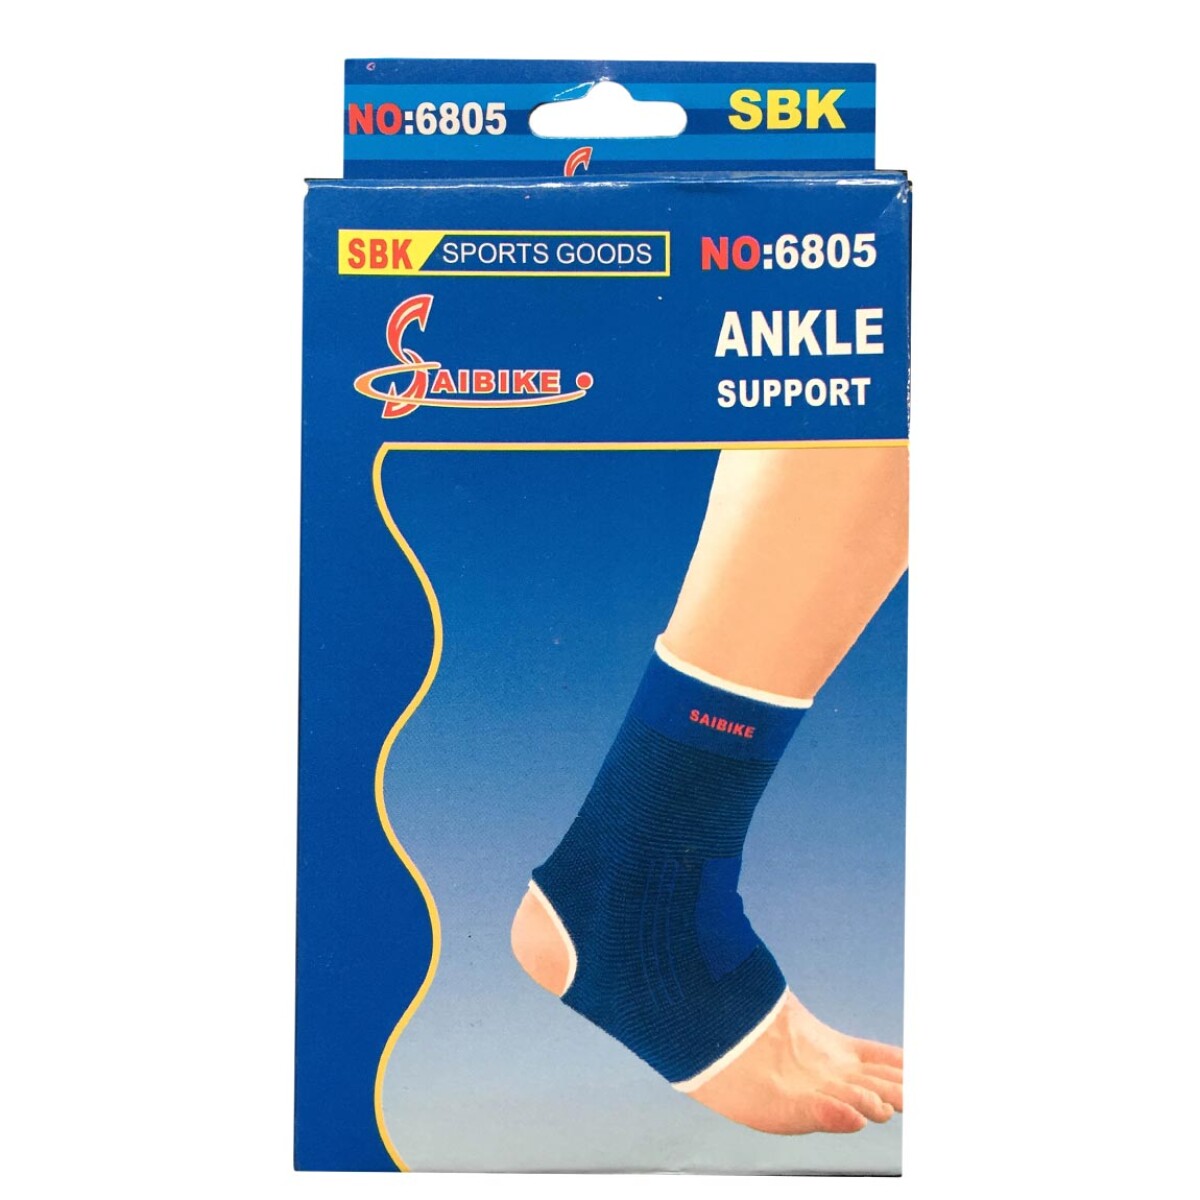 Macri Saibike Tobillera Elast Ankle Support - Azul 